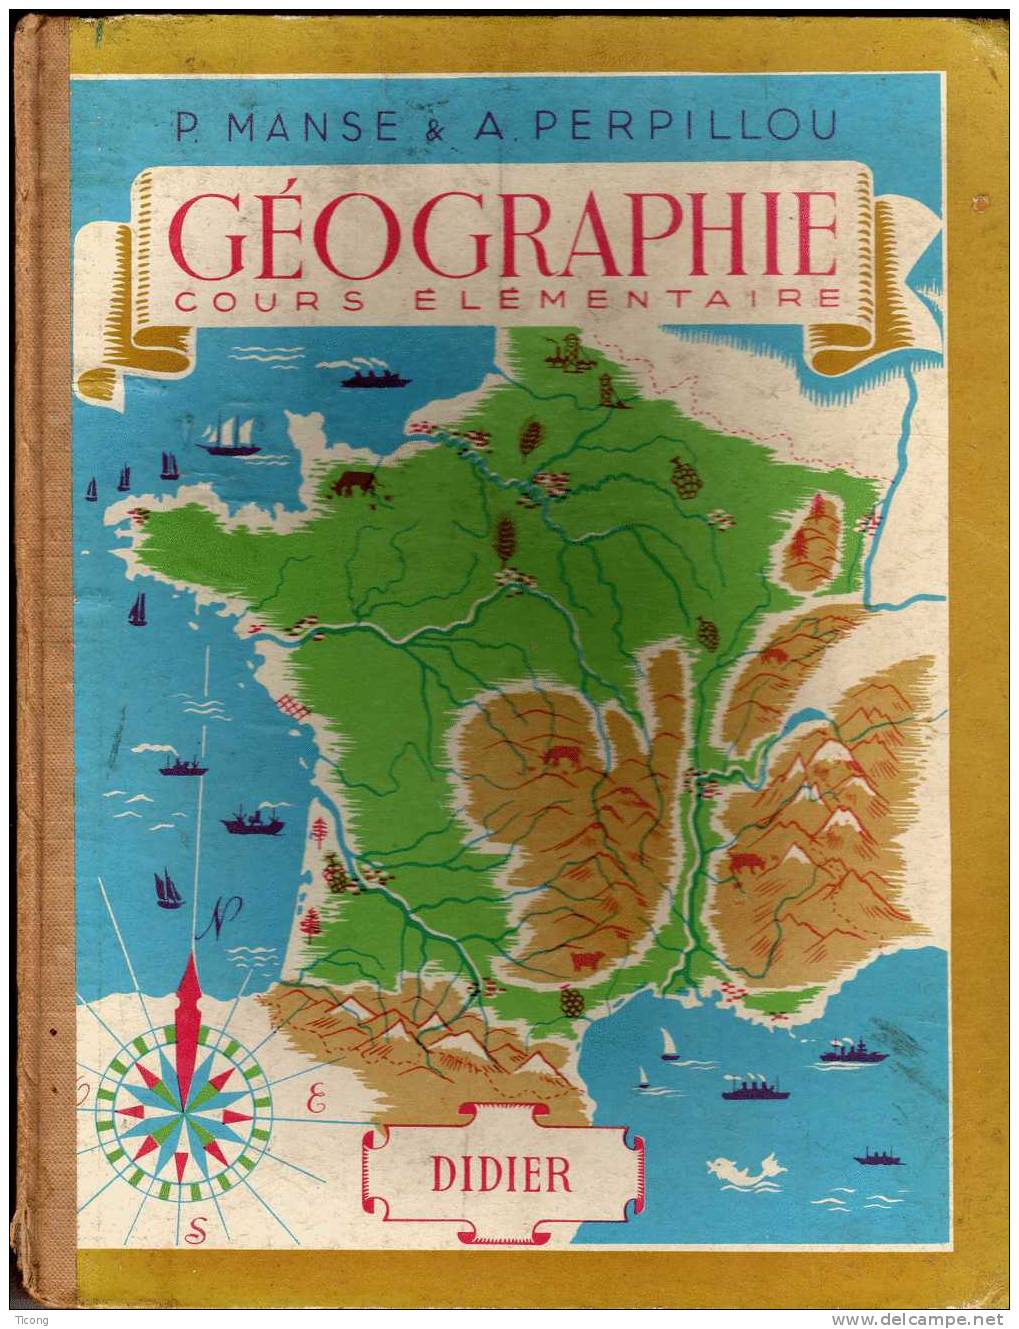 GEOGRAPHIE COURS ELEMENTAIRE MANSE ET PERPILLOU - EDITION DIDIER PARIS 1957 - 6-12 Jahre